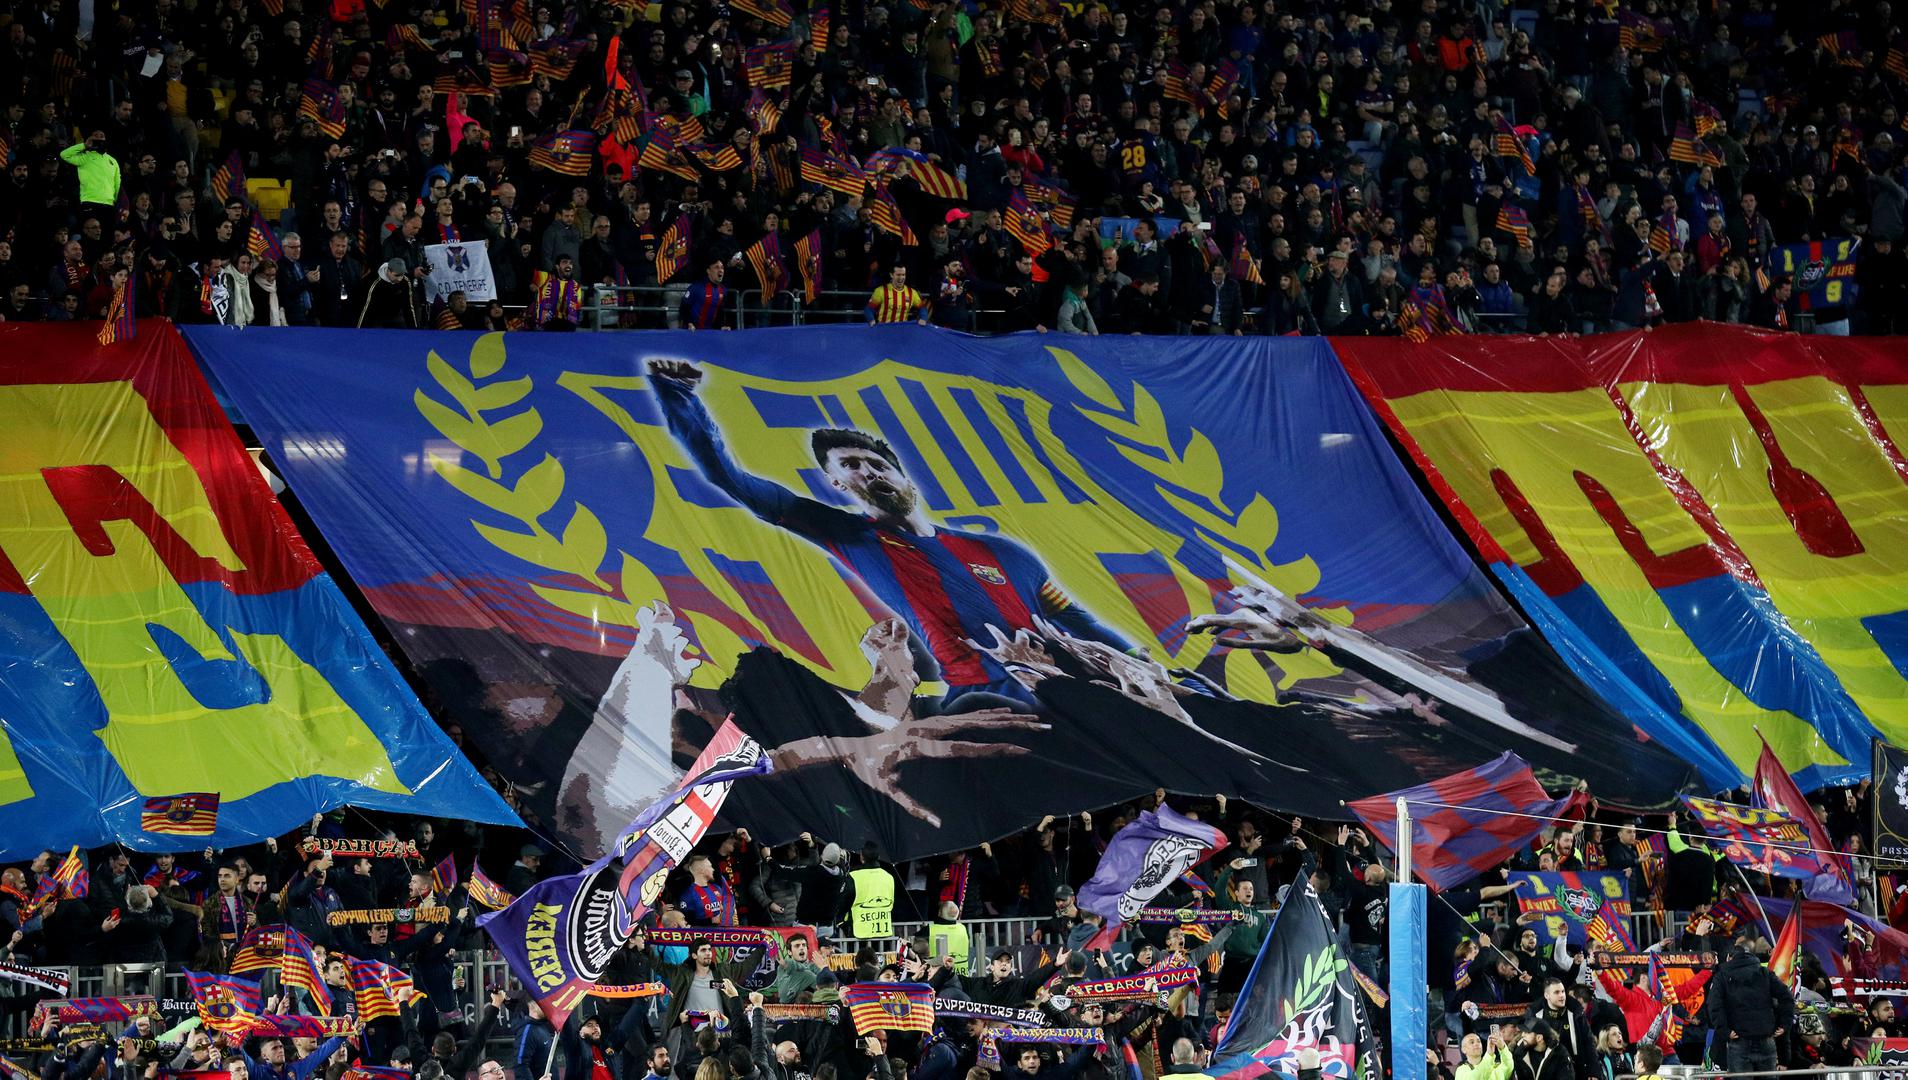  - Bože, čuvaj kralja - transparent je koji su navijači Barcelone razvili uoči utakmice protiv Chelseaja.

